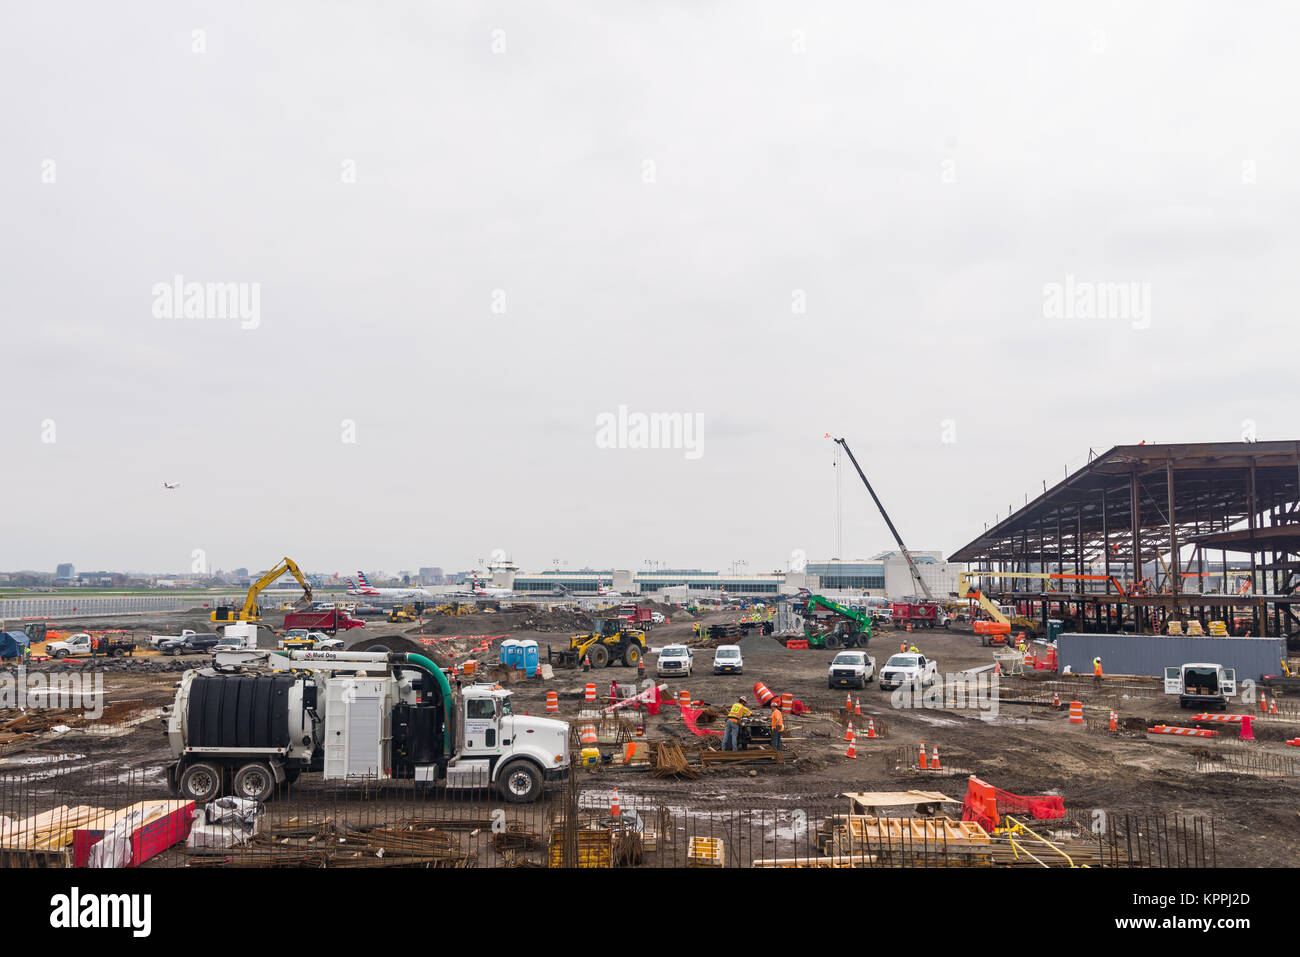 L'équipement de construction et les travailleurs de la construction de la nouvelle aérogare de l'aéroport La Guardia dans le Queens, New York, USA Banque D'Images